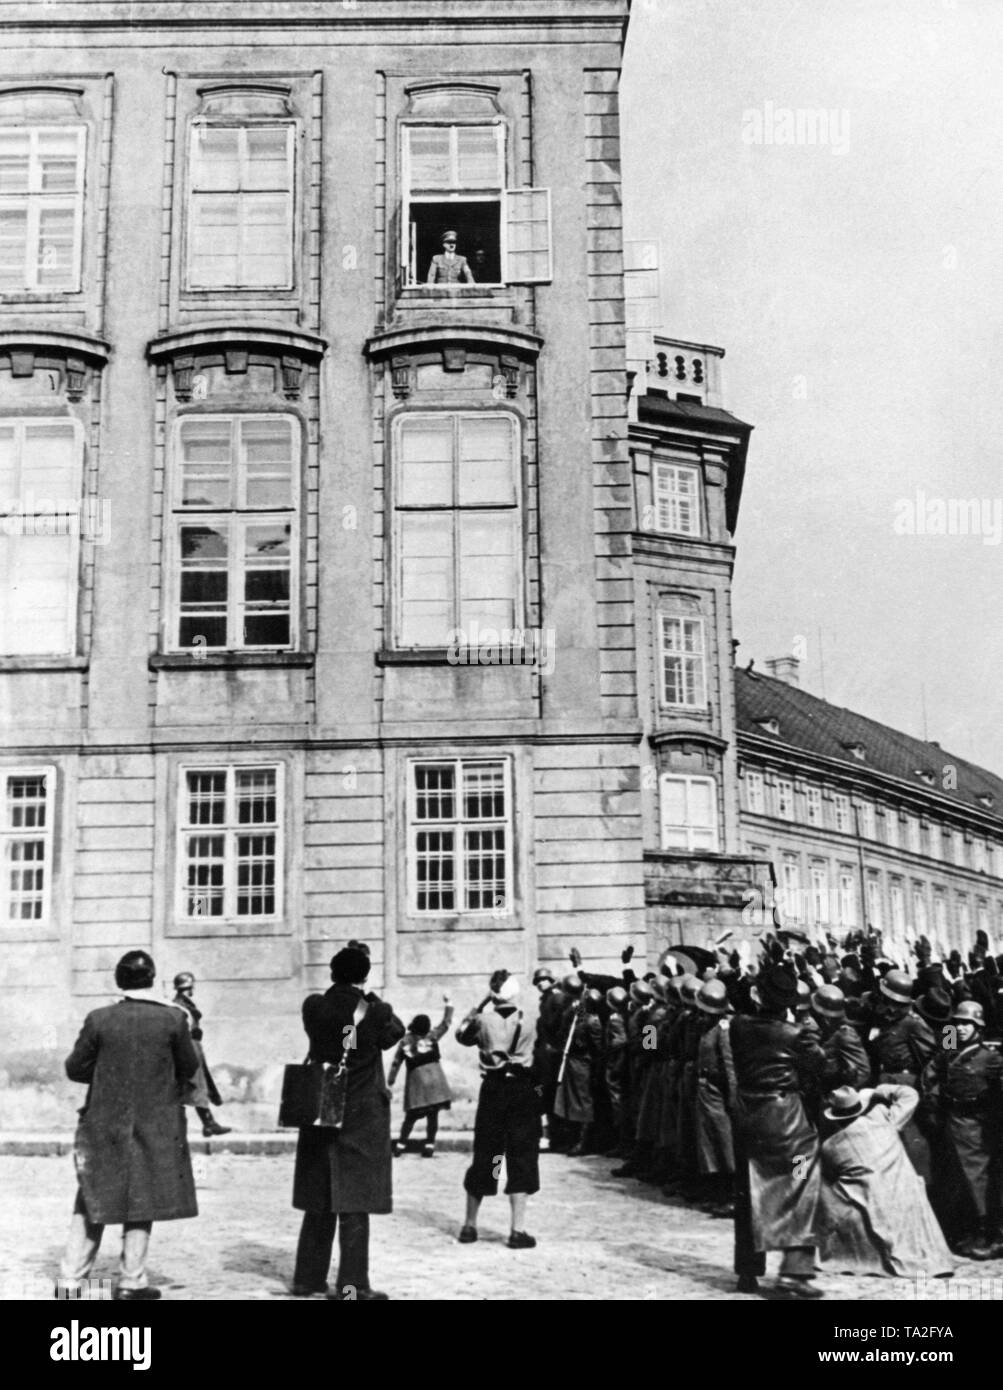 Adolf Hitler ist in Prag gefeiert. Sechs Monate nach dem Münchner Abkommen, Hitler besetzten die verbleibenden Bereiche von Böhmen und Mähren und erste slowakische Republik wurde auf seinen Befehl gegründet. Mit der Okkupation der Tschechoslowakei, die internationale Situation eskalierte vor dem Zweiten Weltkrieg. Stockfoto